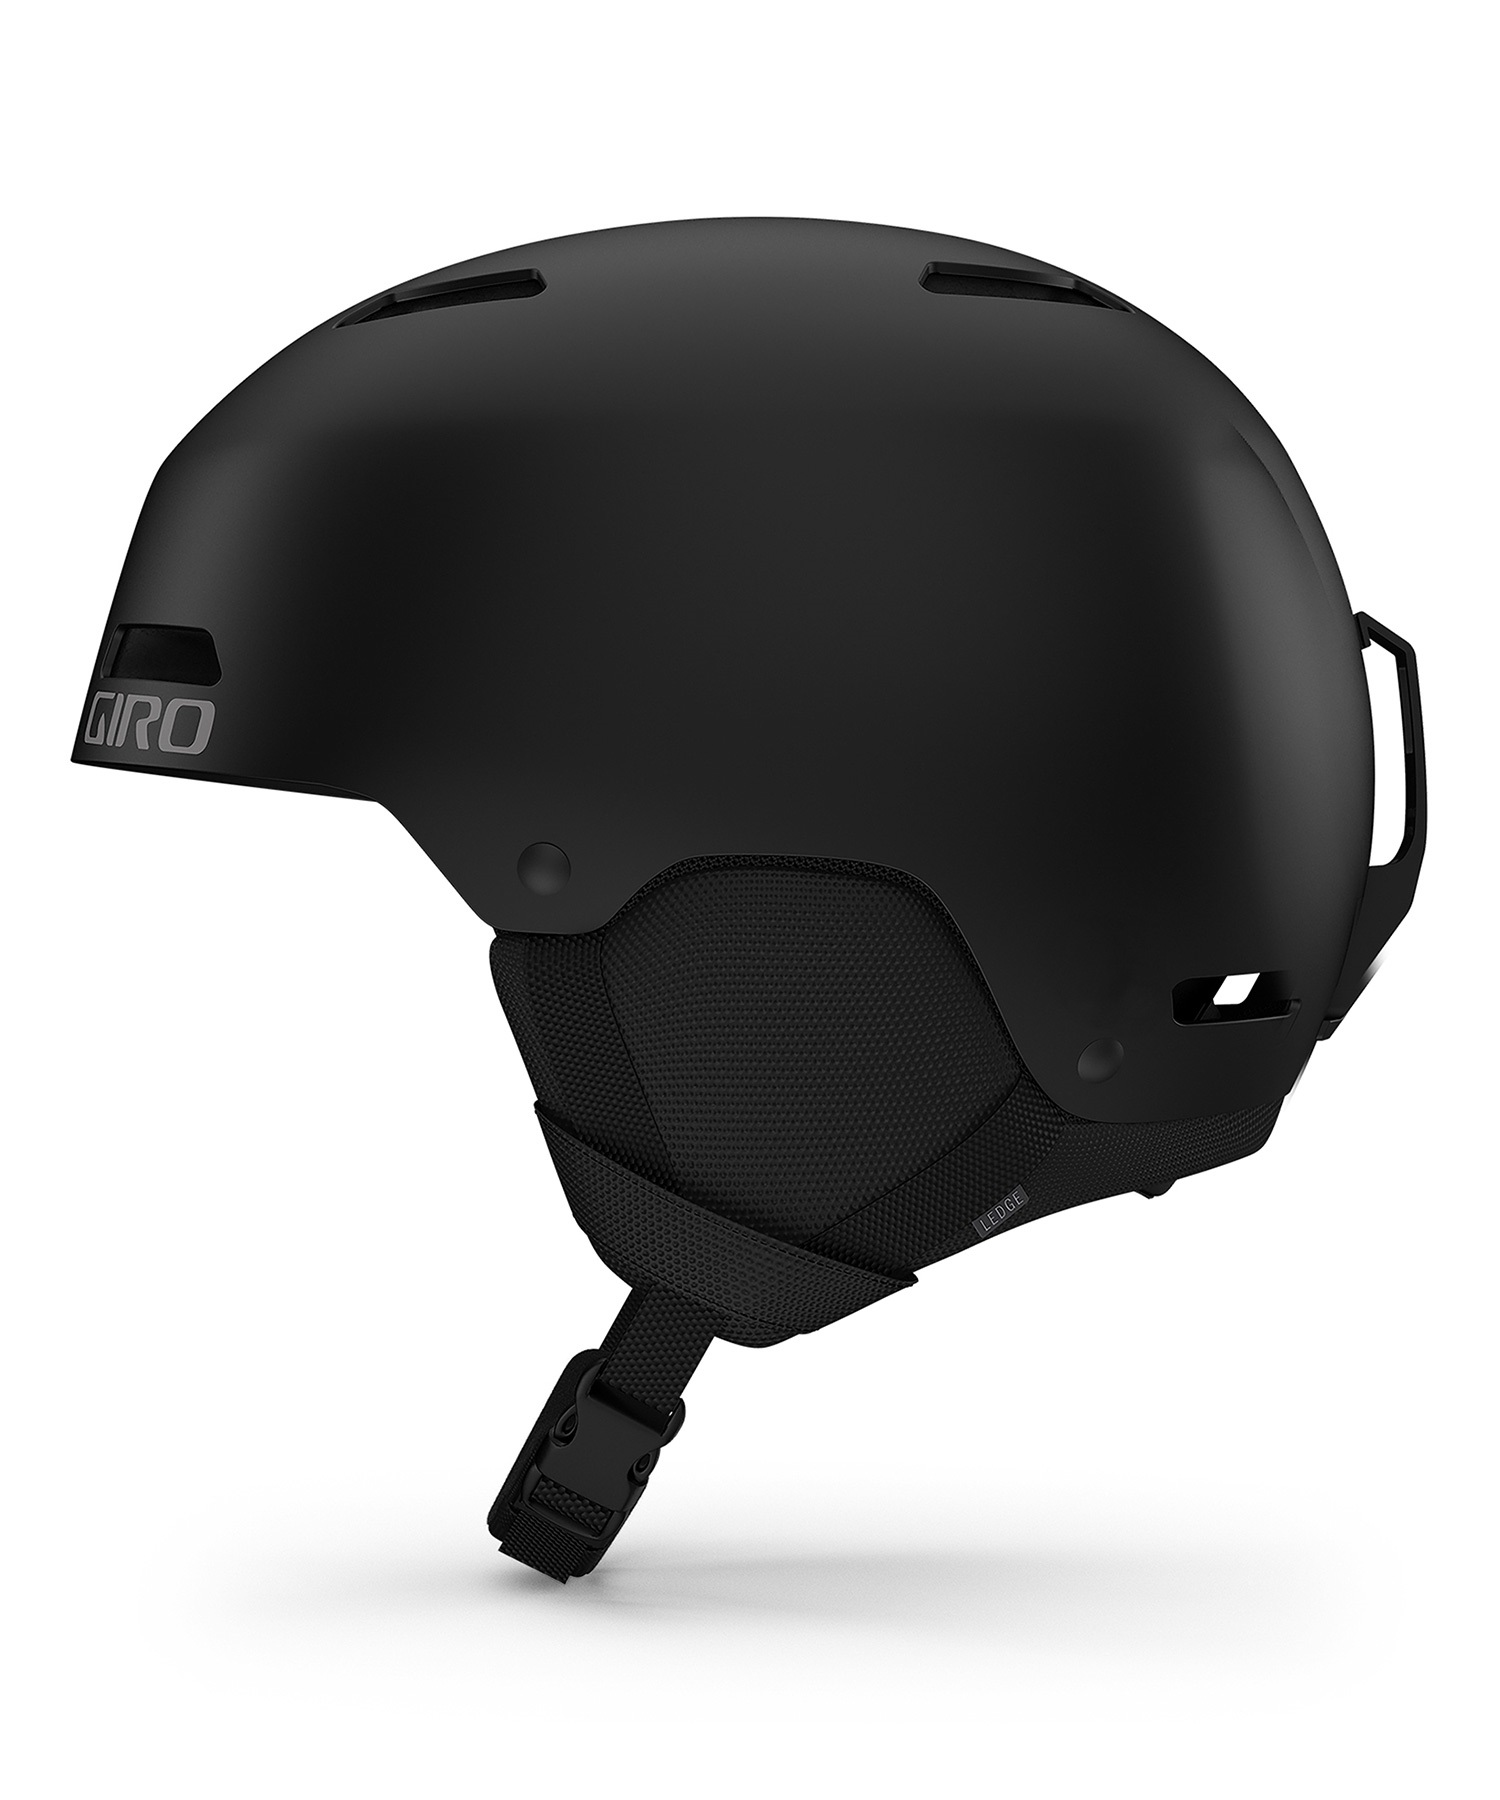 GIRO ジロ スノーボード ヘルメット ユニセックス LEDGE FS 23-24 